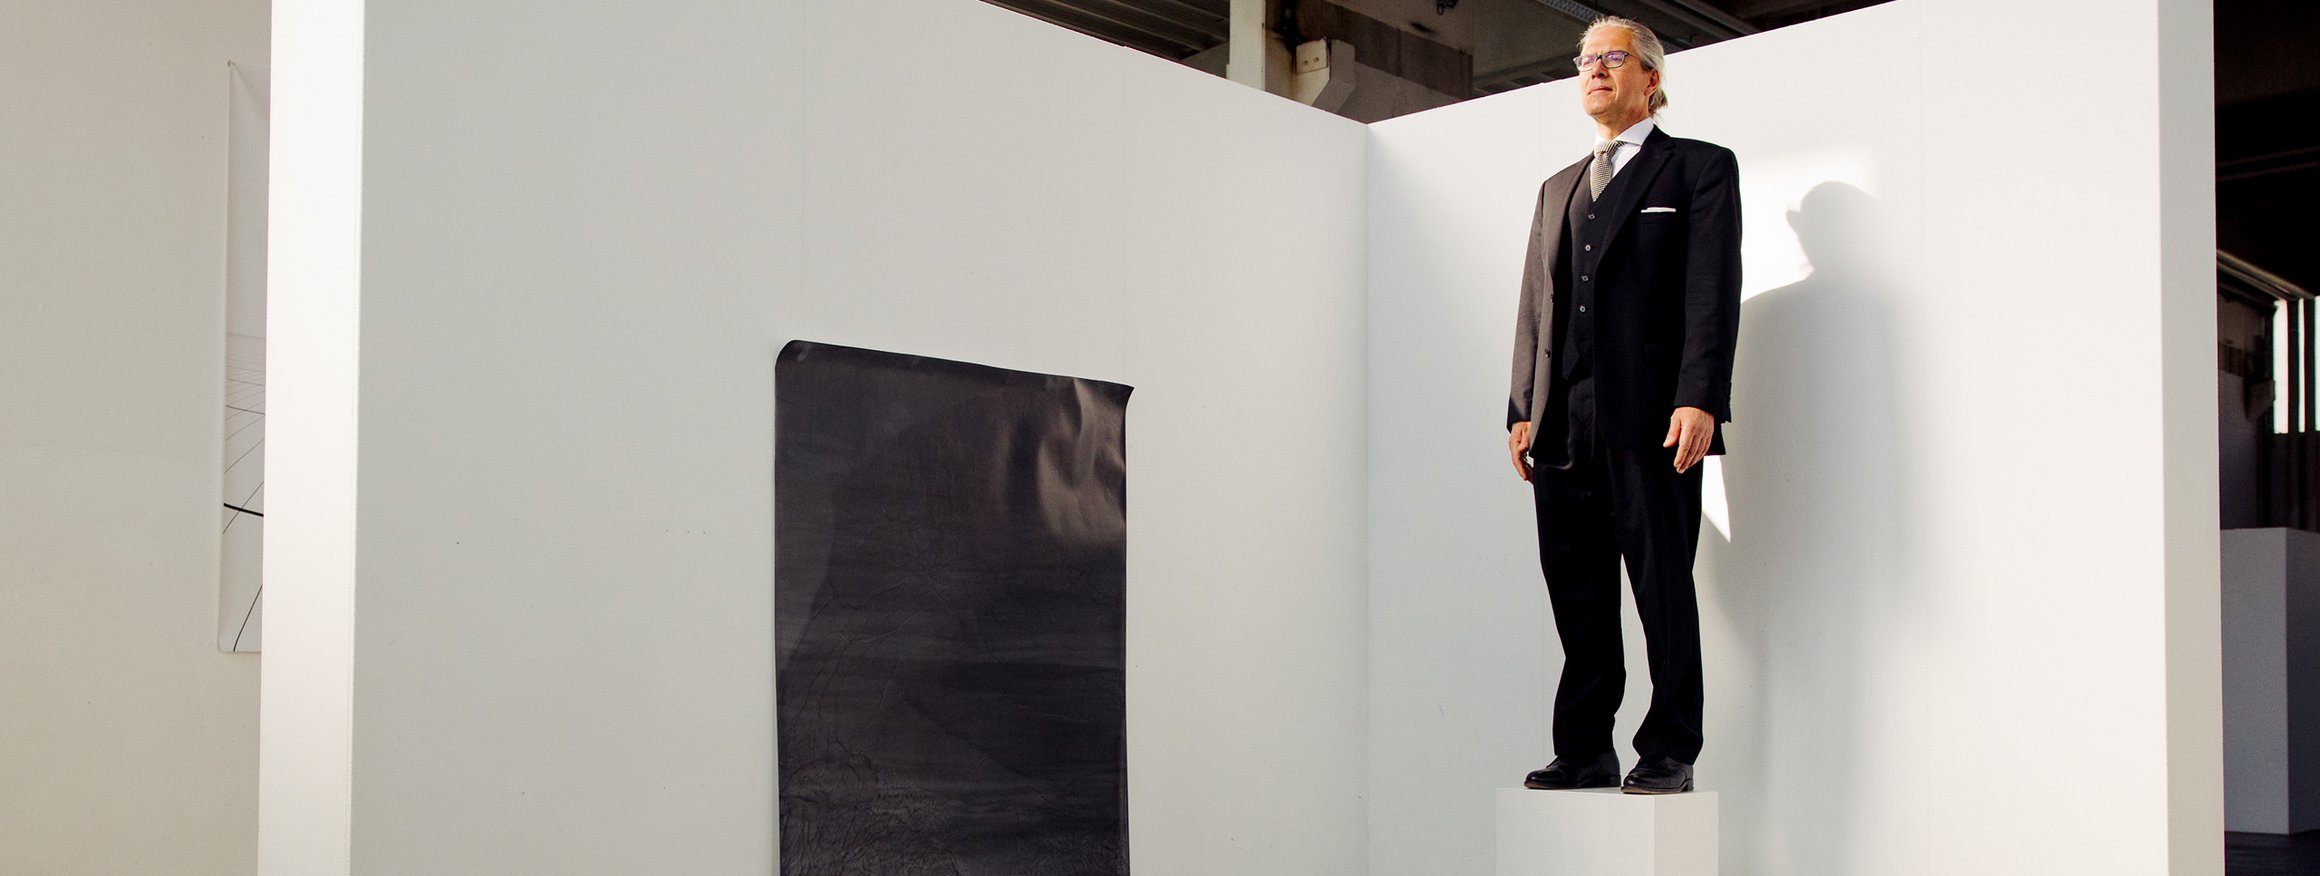 Der Schriftsteller, Steffen Kopetzky, steht in einer Kunstgalerie auf einem Podest wie eine Skulptur, daneben hängt ein Kunstwerk an der Wand